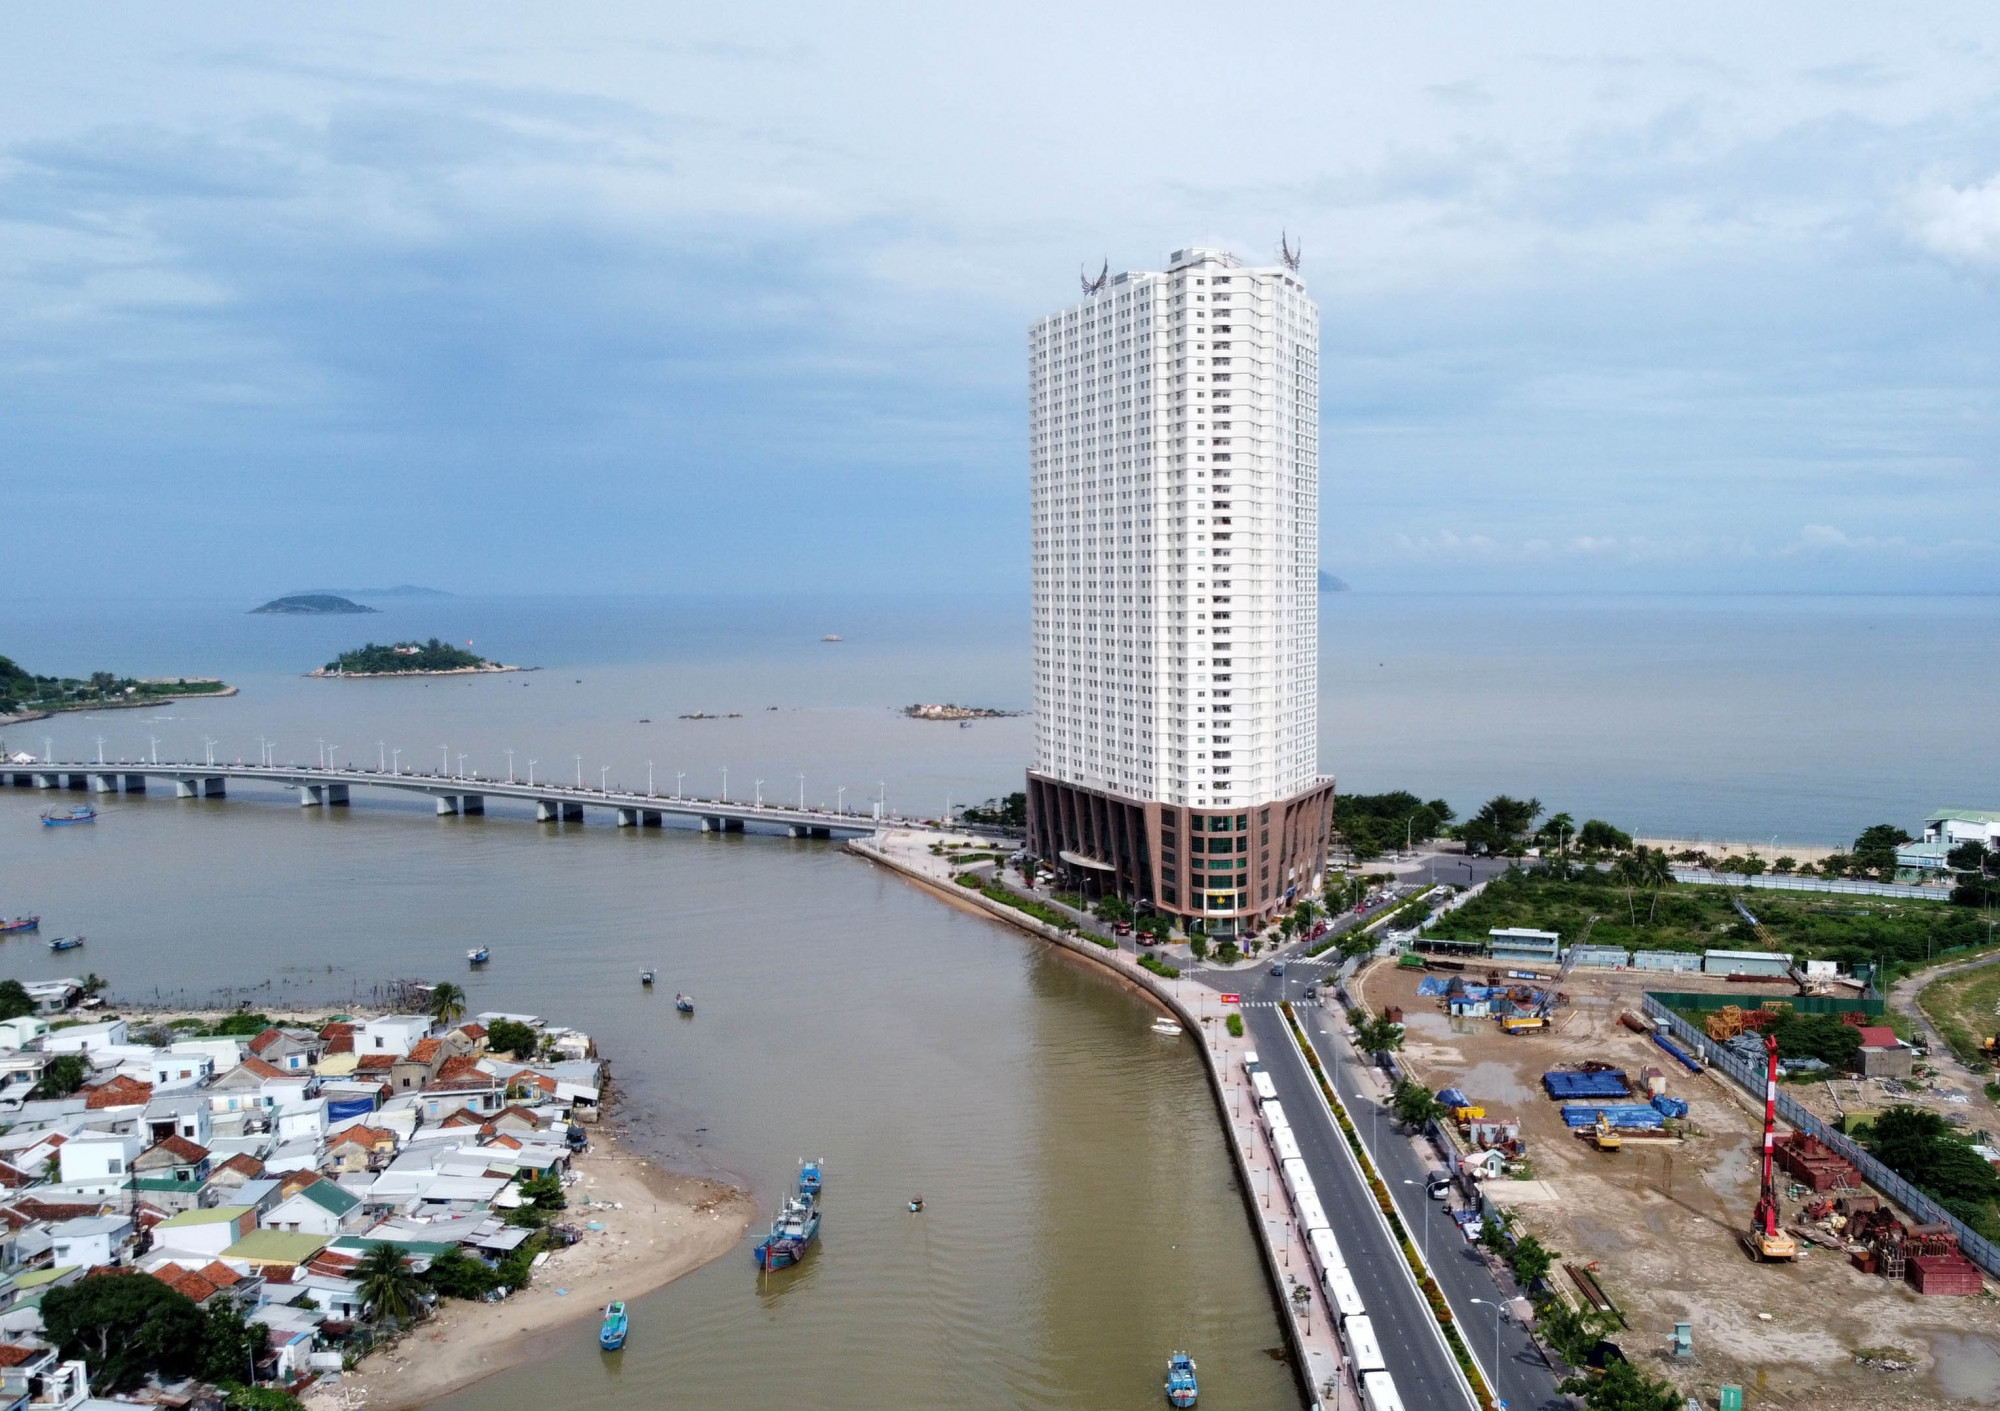 Tổ hợp khách sạn căn hộ cao cấp Mường Thanh Khánh Hòa được chủ đầu tư đưa vào hoạt động khi chưa văn bản chấp